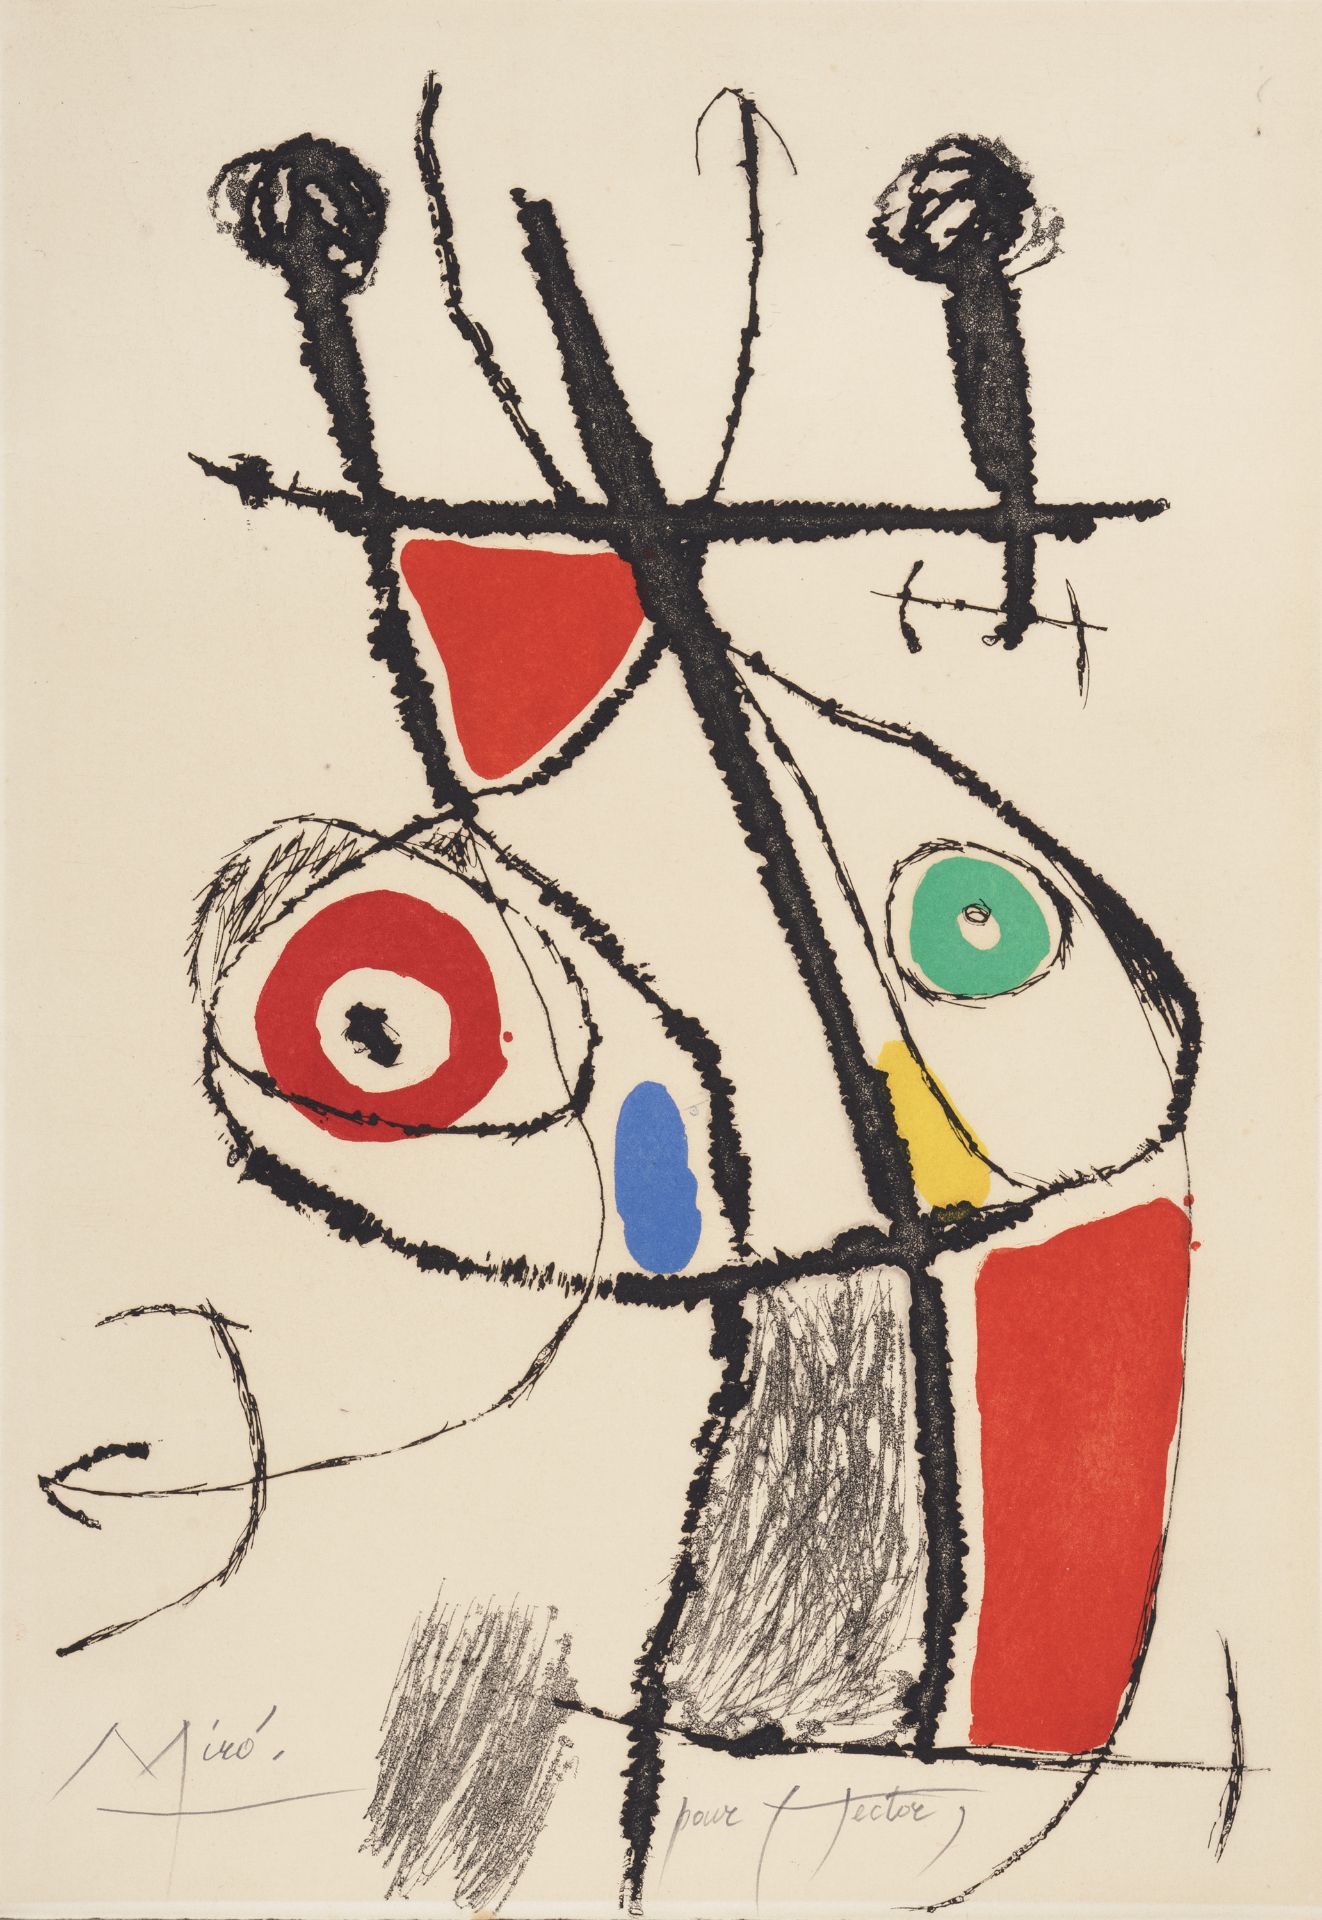 Joan Miró, Blatt "XII" aus "Le courtisan grotesque". 1974.